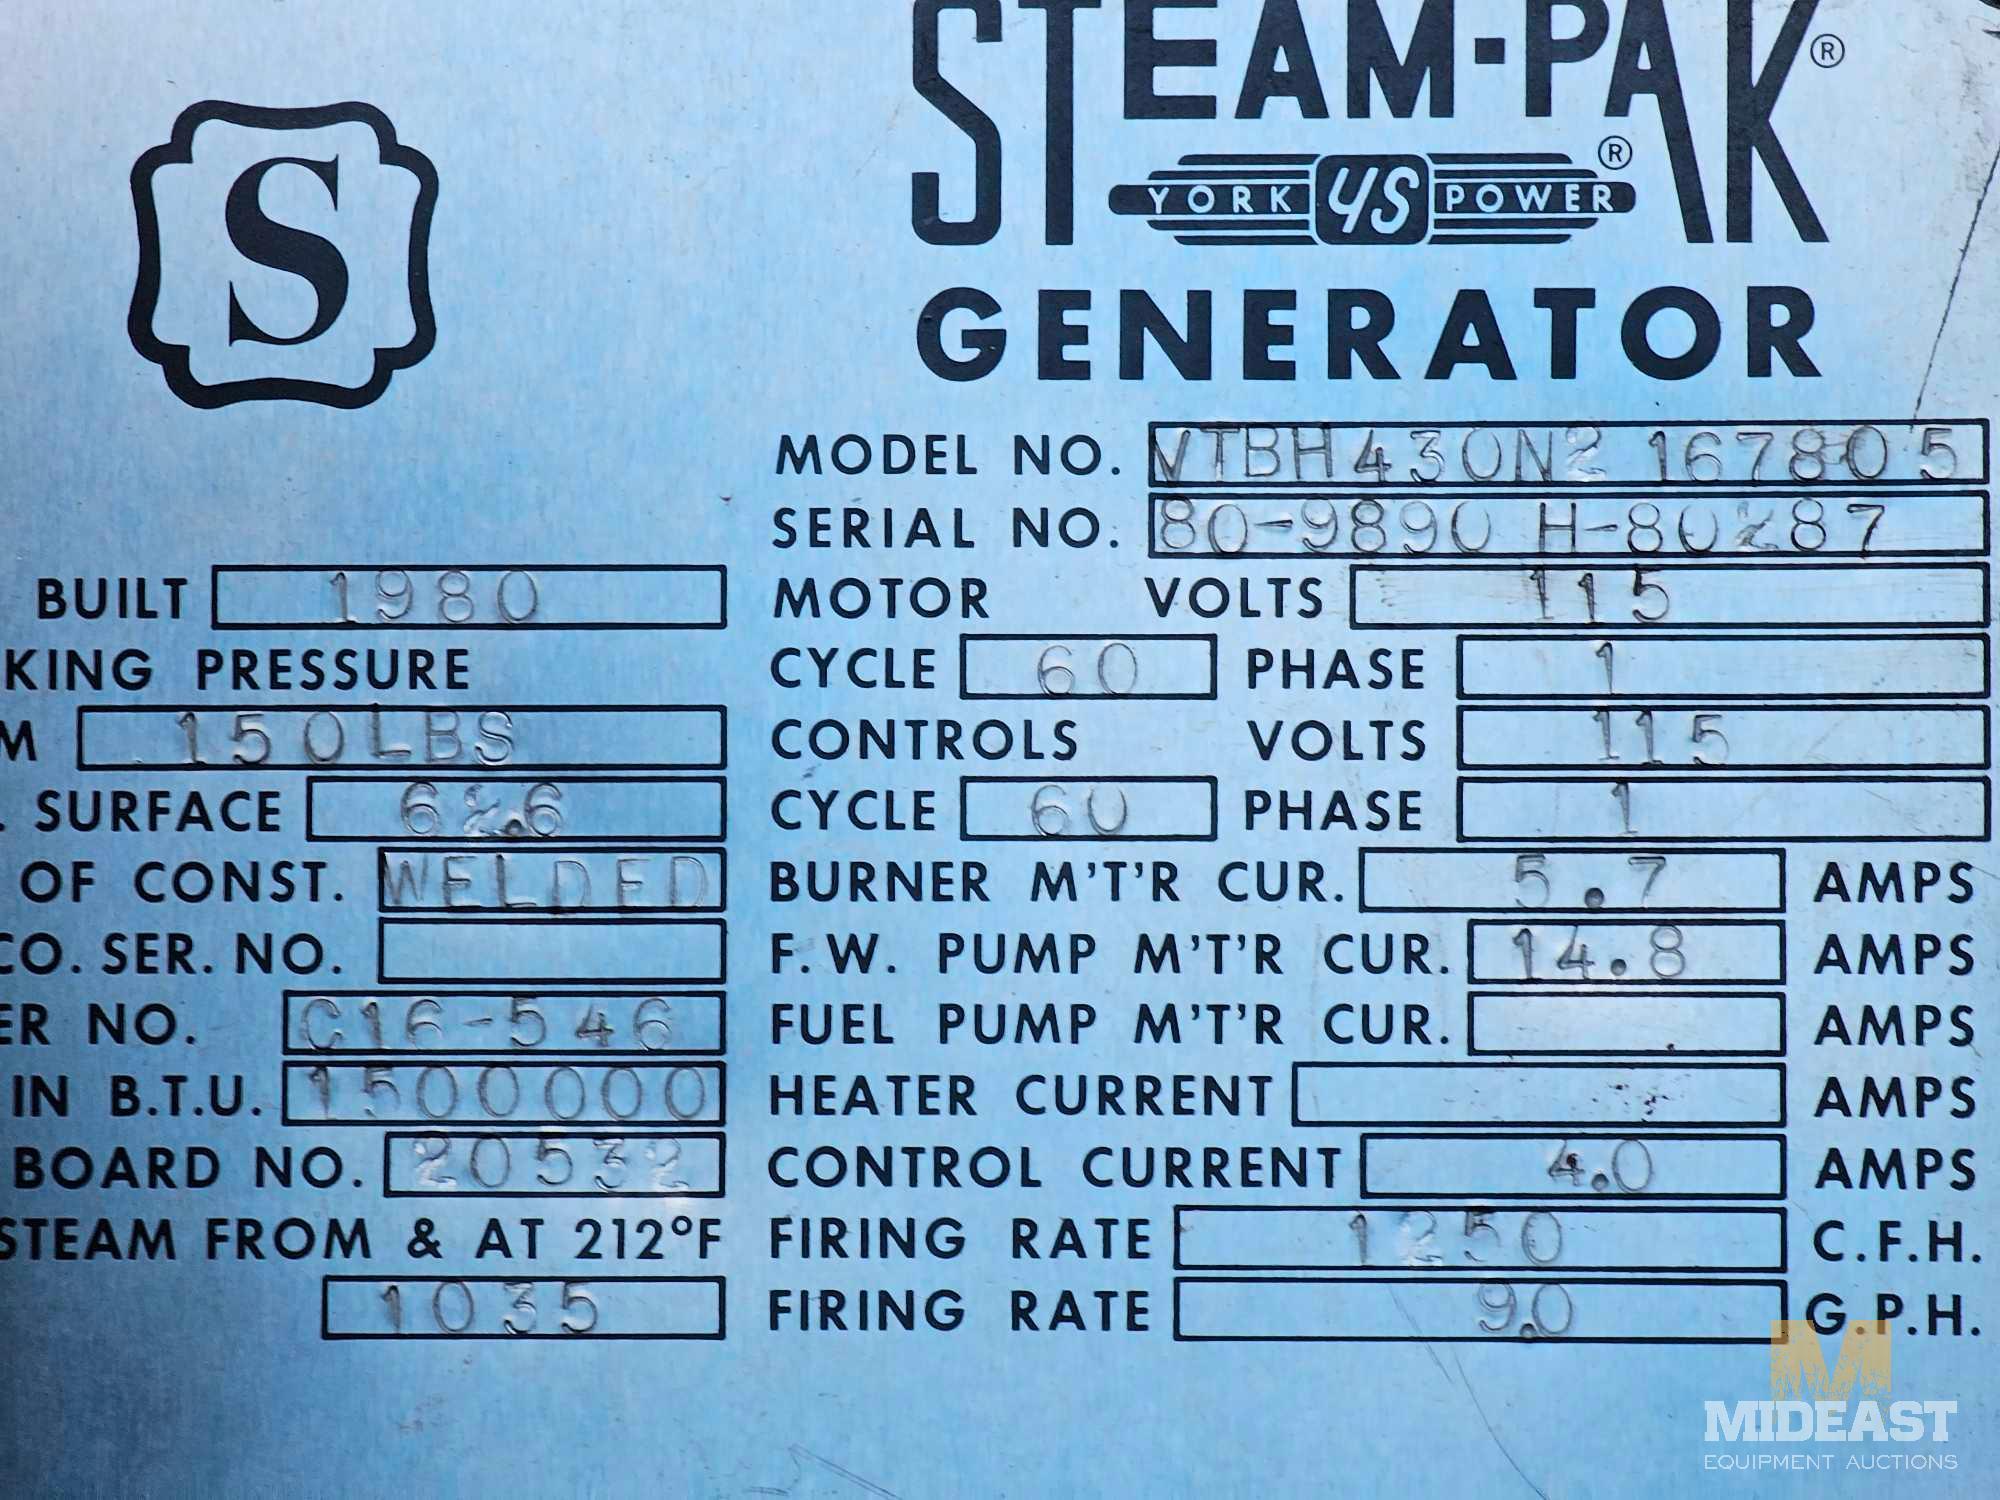 SteamPak 1,500,000 BTU Boiler